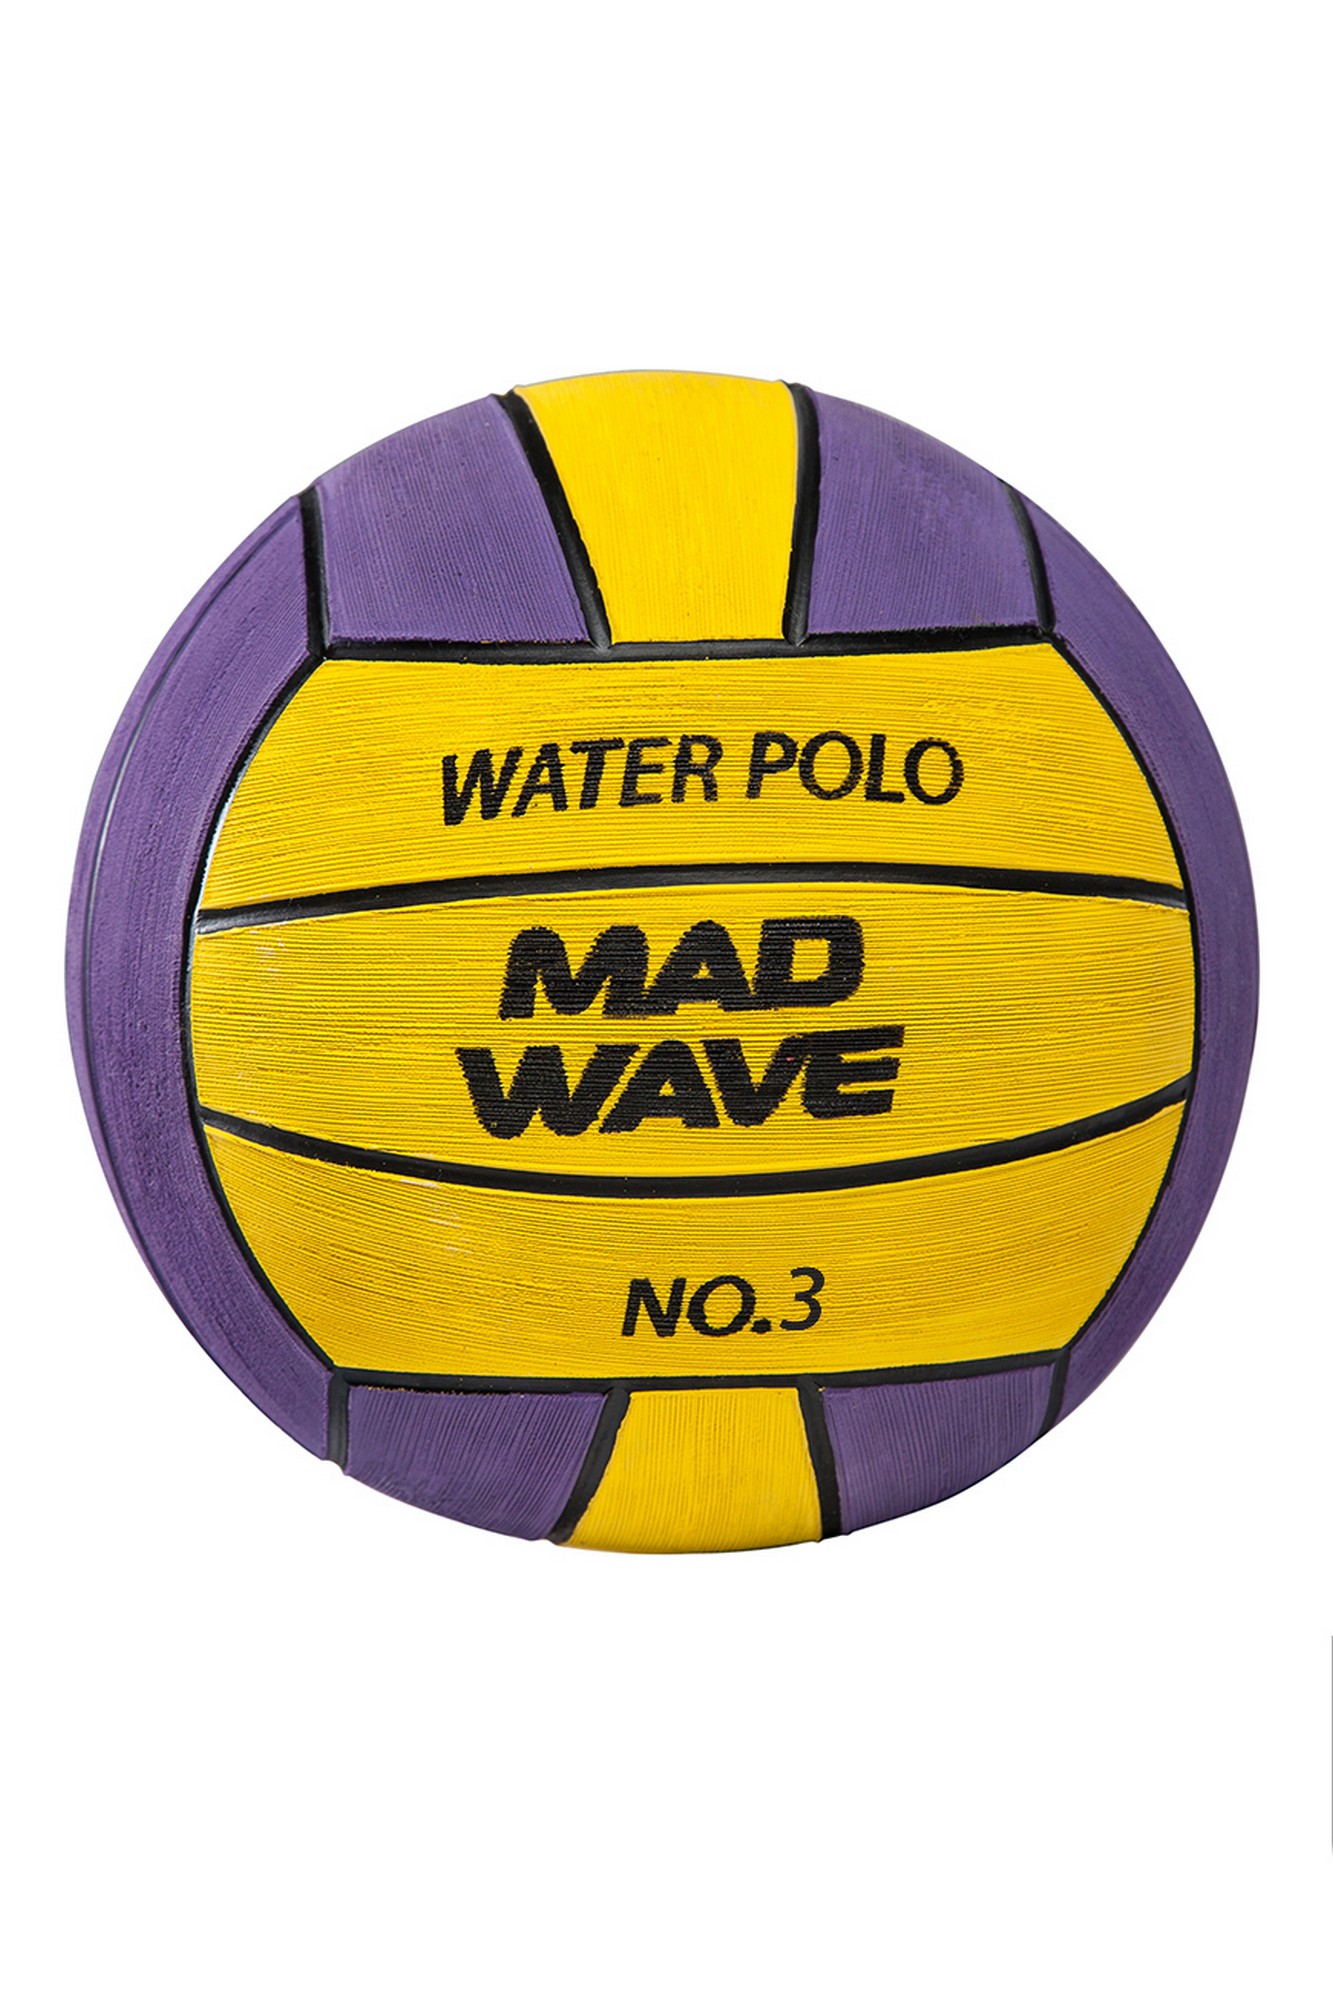 Мяч для водного поло Mad Wave WP Official #3 M2230 03 3 06W 1333_2000